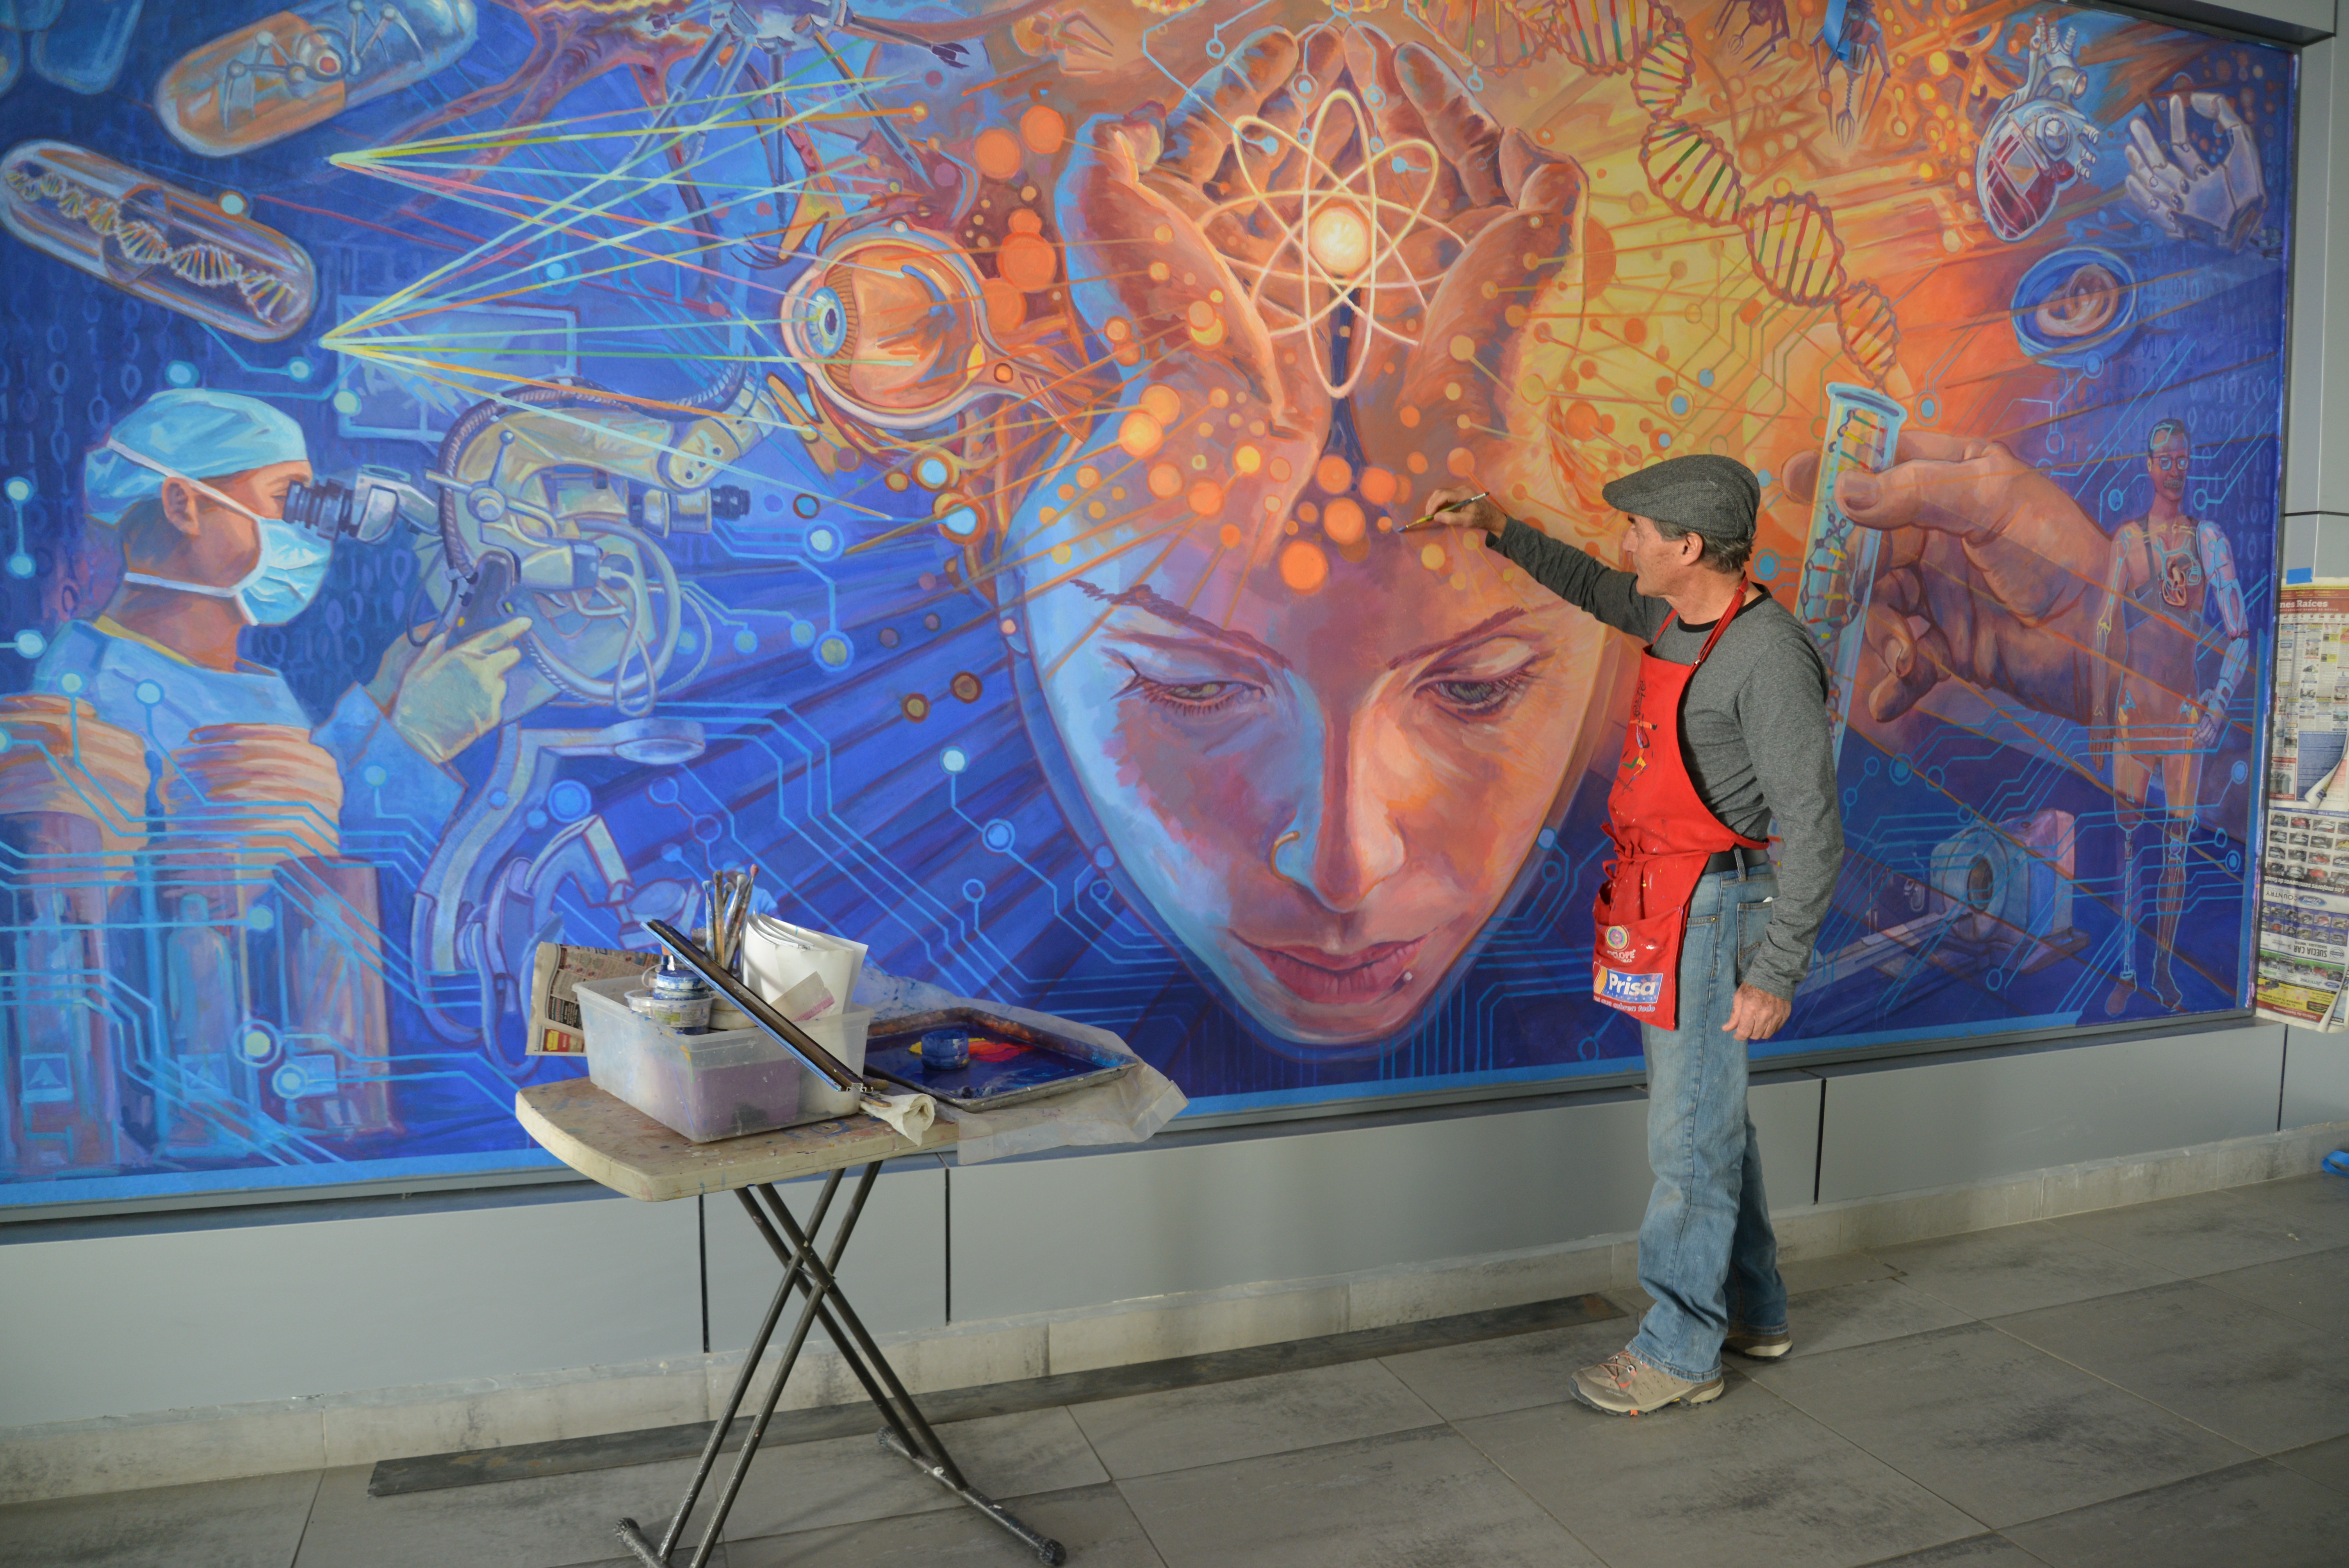 Vista general del mural del pintor Jorge Monrroy. Él de espaldas detallando su mural